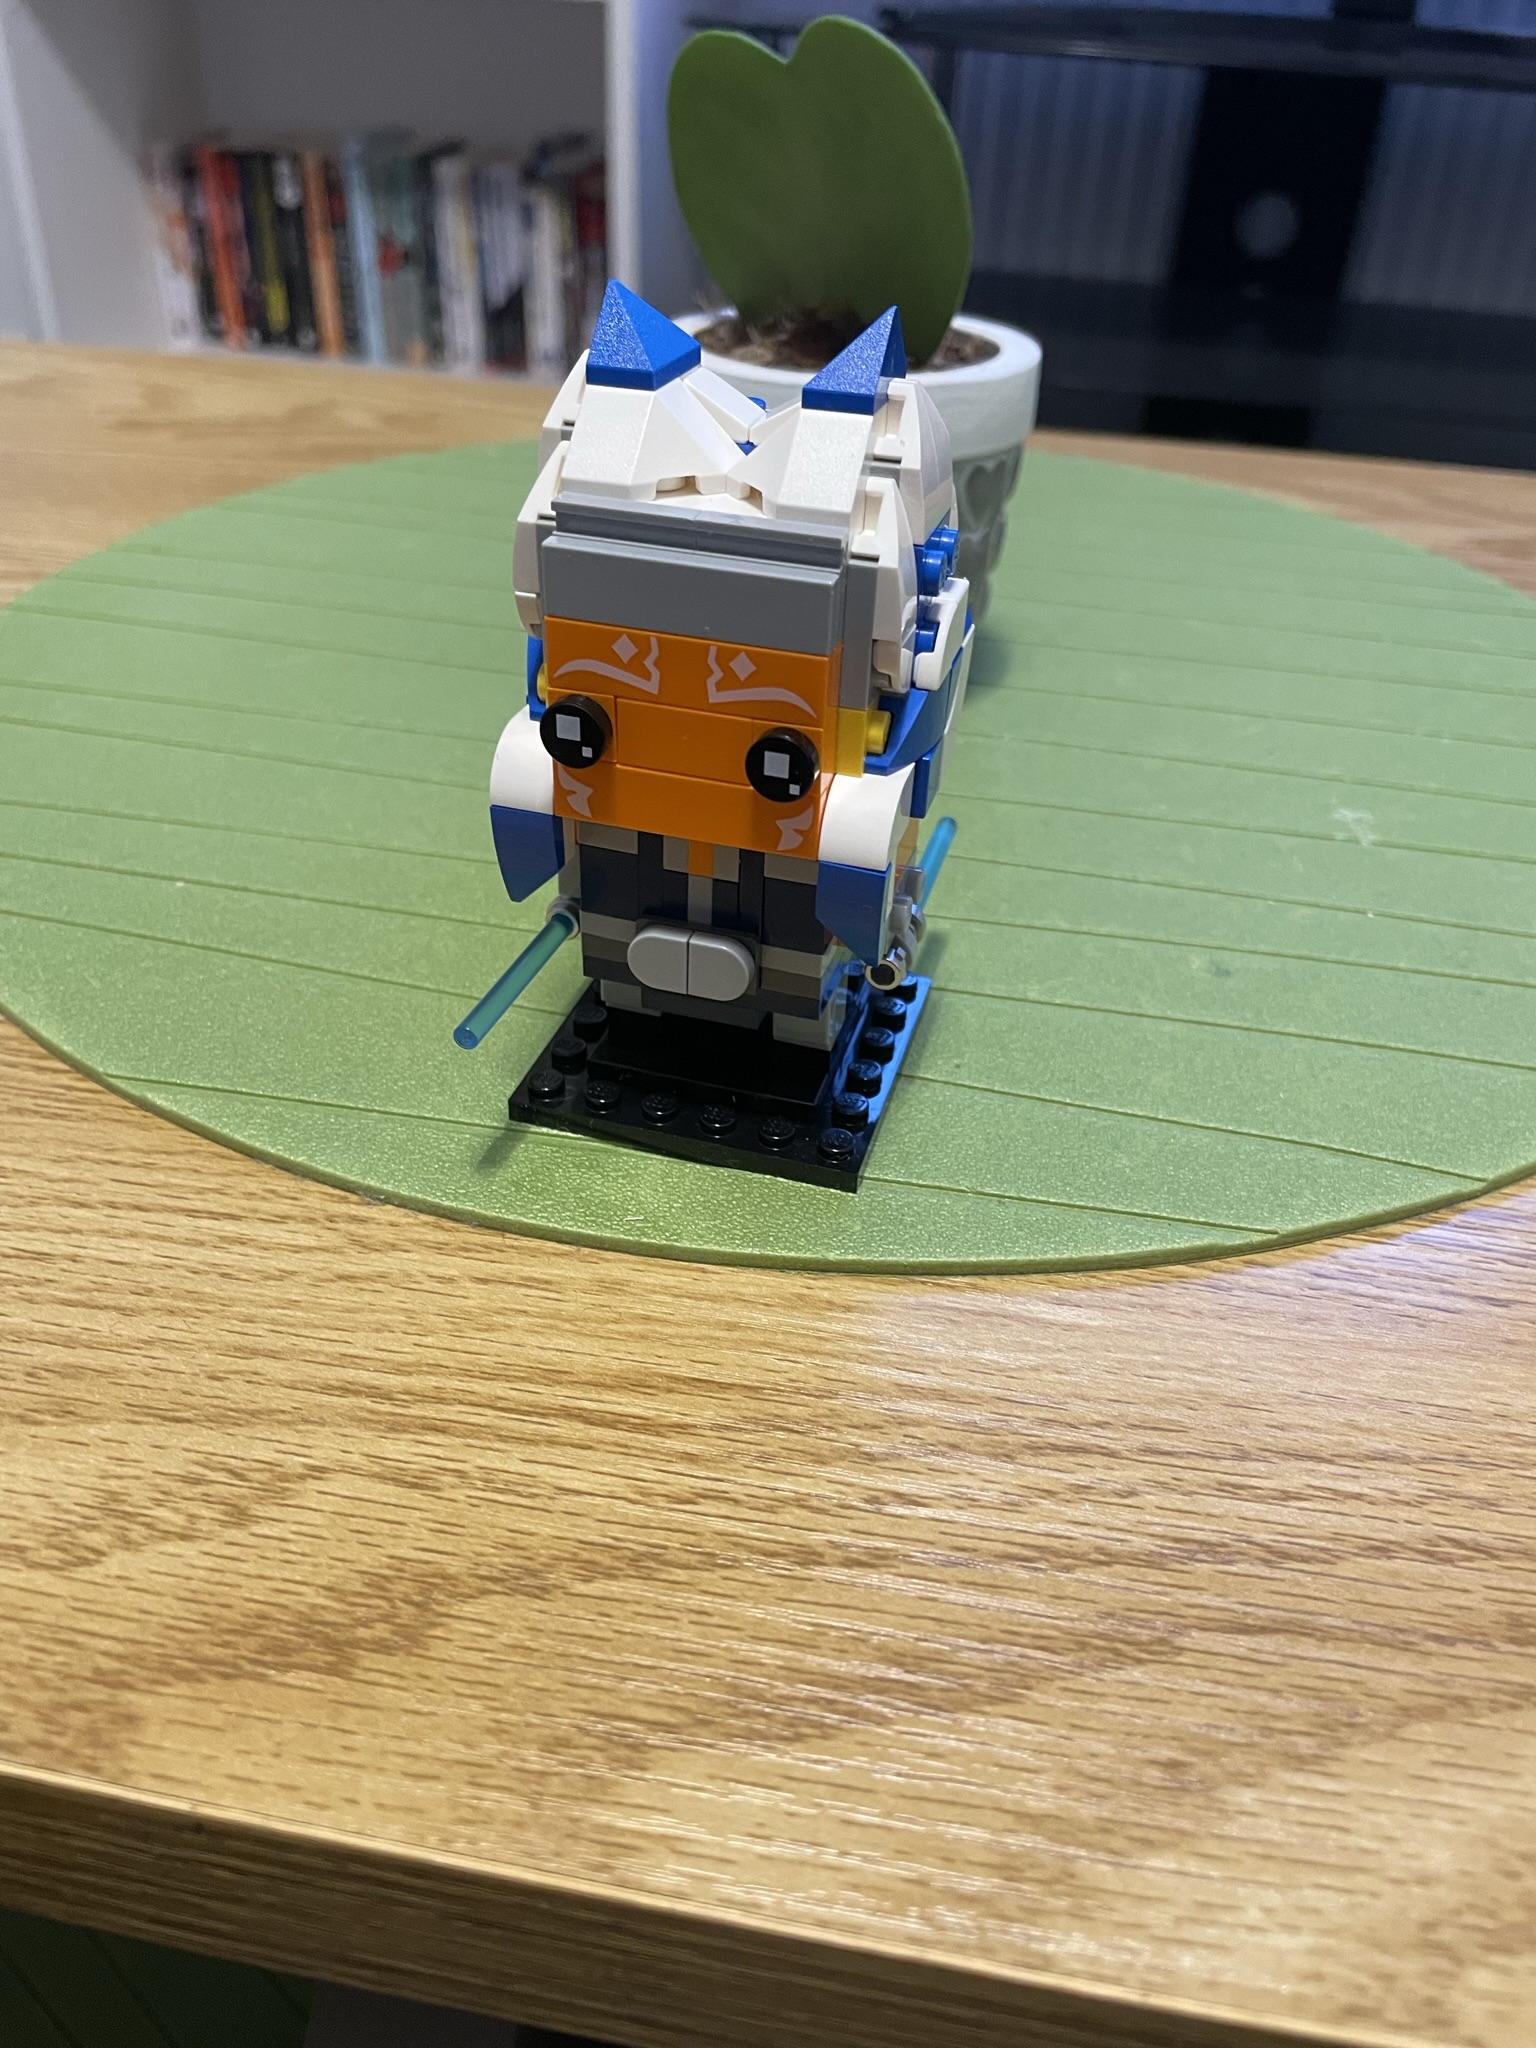 A Lego Brickheadz model of Ahsoka Tano